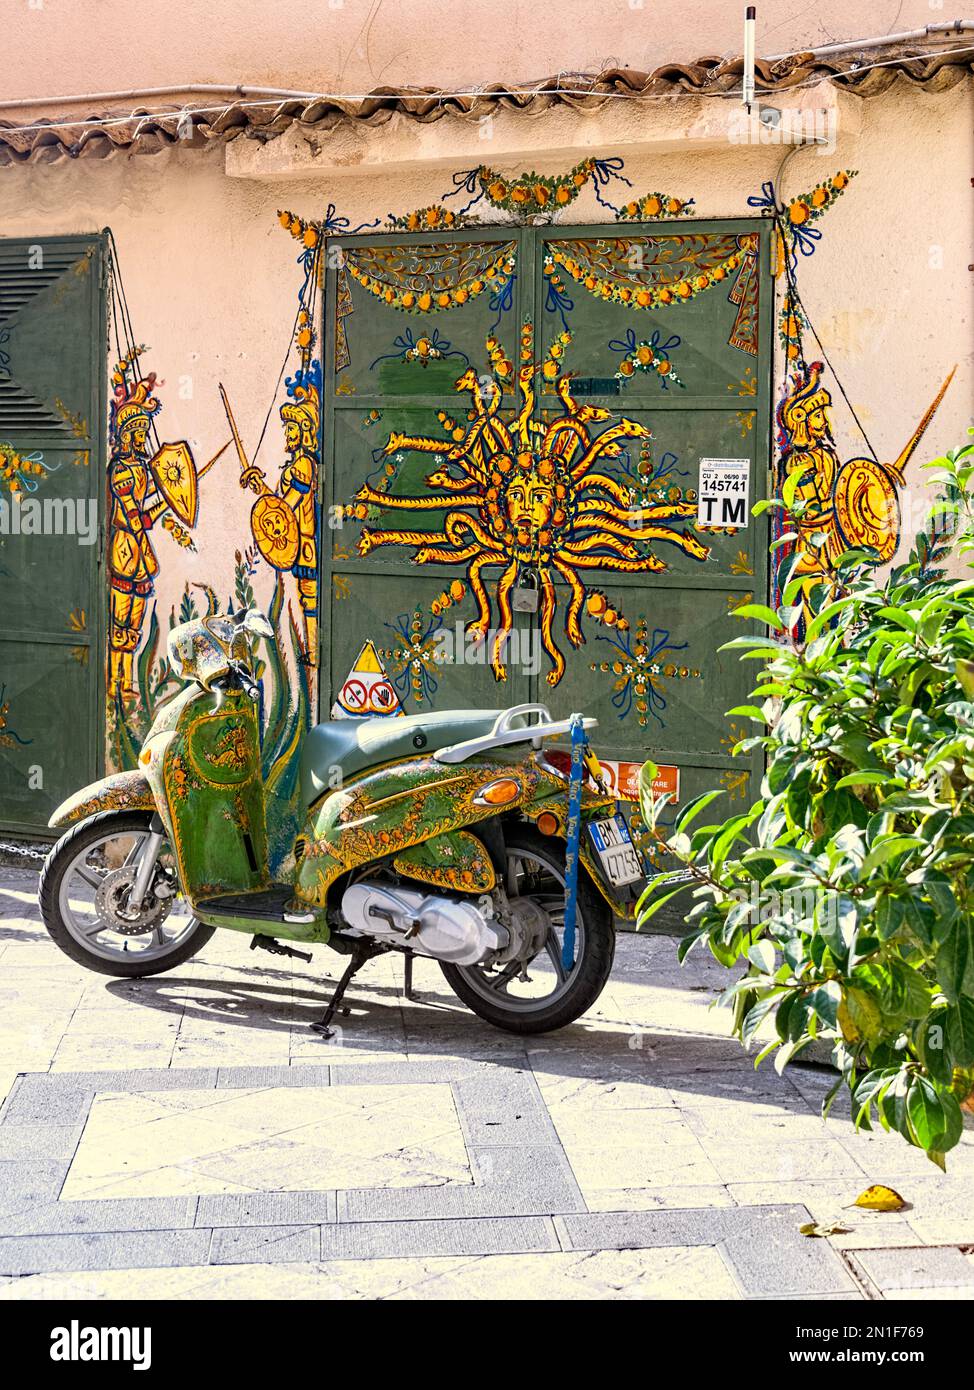 Moto verte et jaune aux couleurs vives dans la vieille ville de Taormina Sicile Italie Banque D'Images